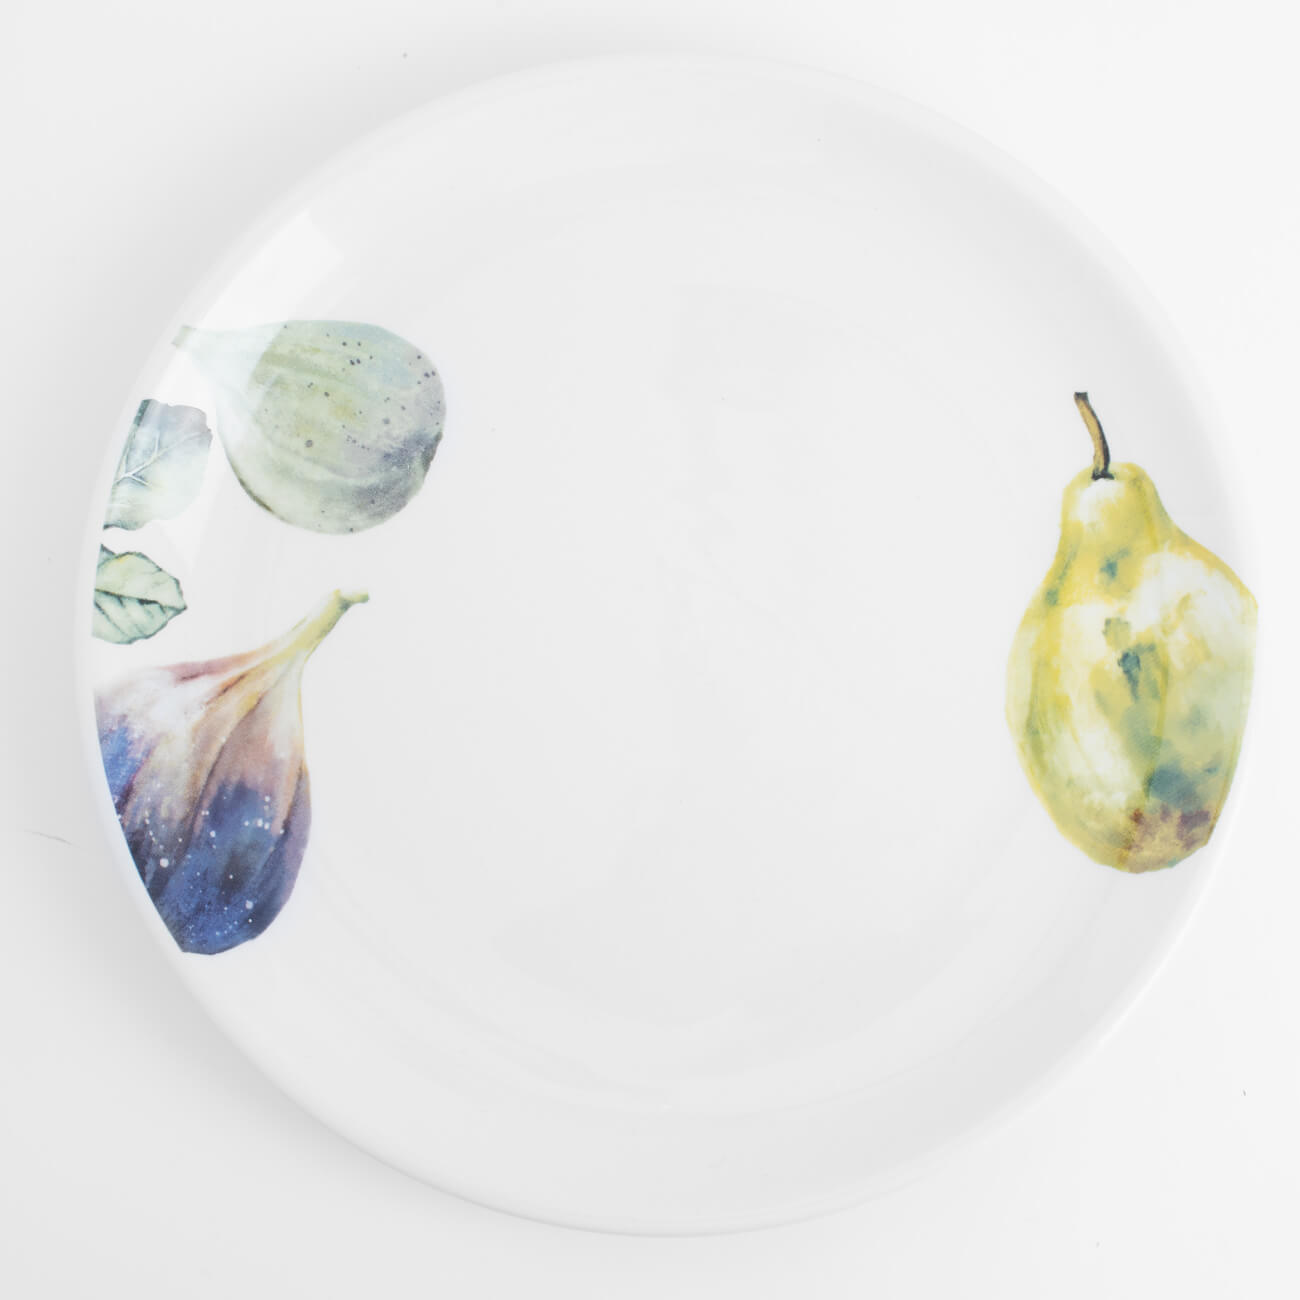 Тарелка закусочная, 21 см, керамика, белая, Инжир и груша, Fruit garden изображение № 1